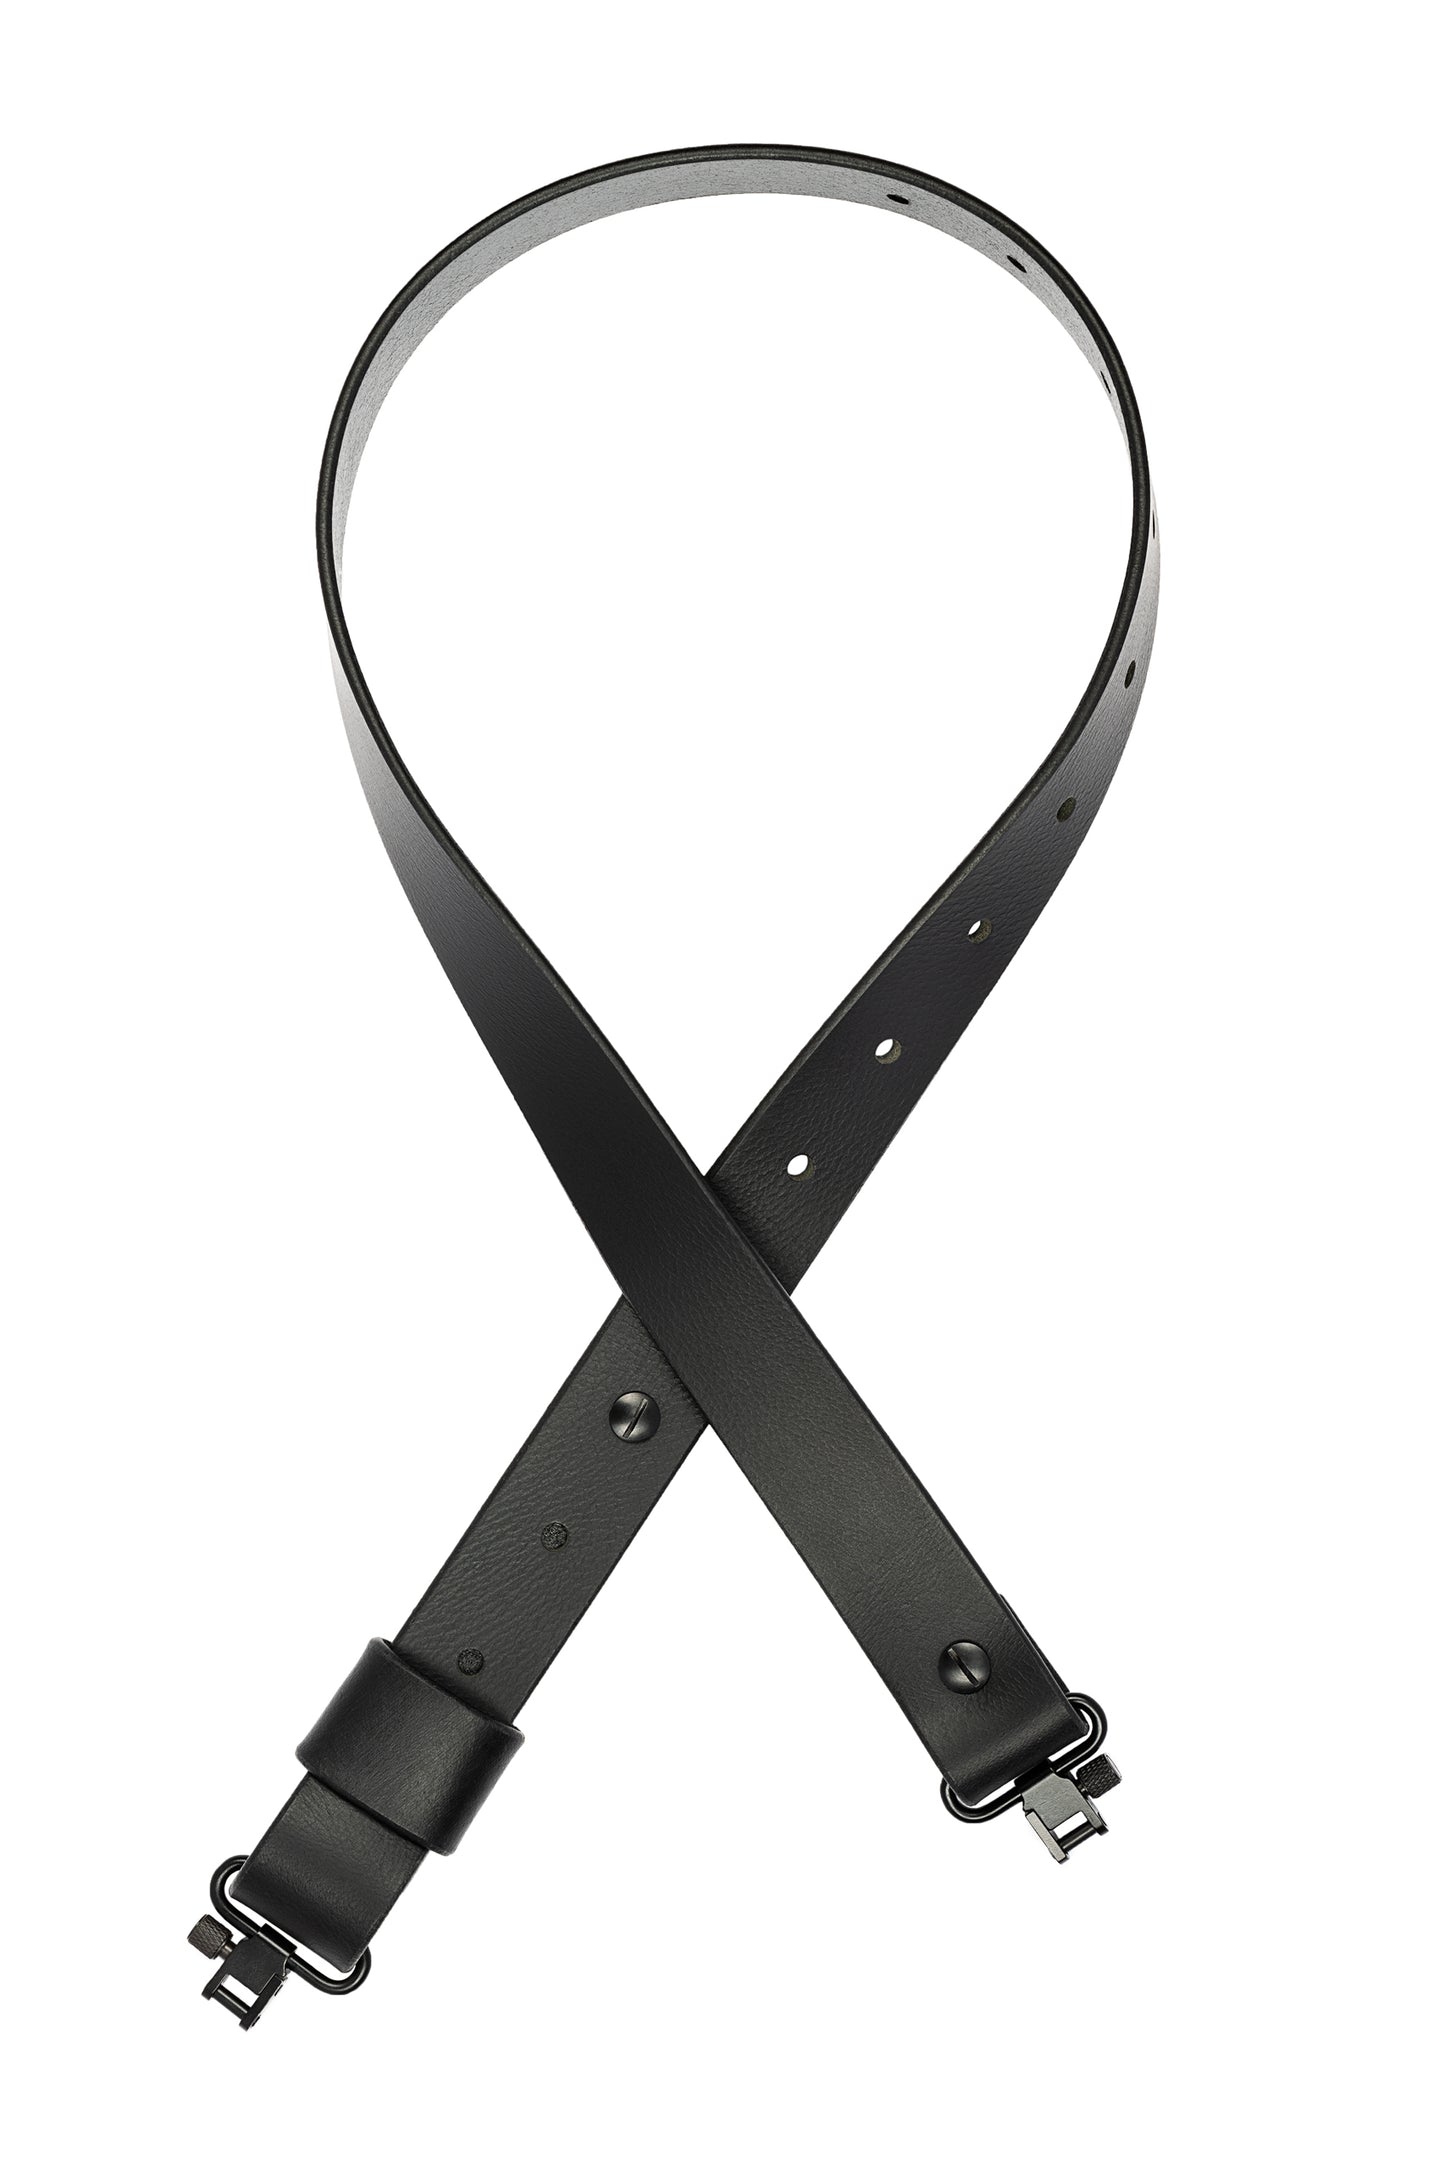 Model BB-Traditional Adjustable Sling. Black Leather. Black Hardware.